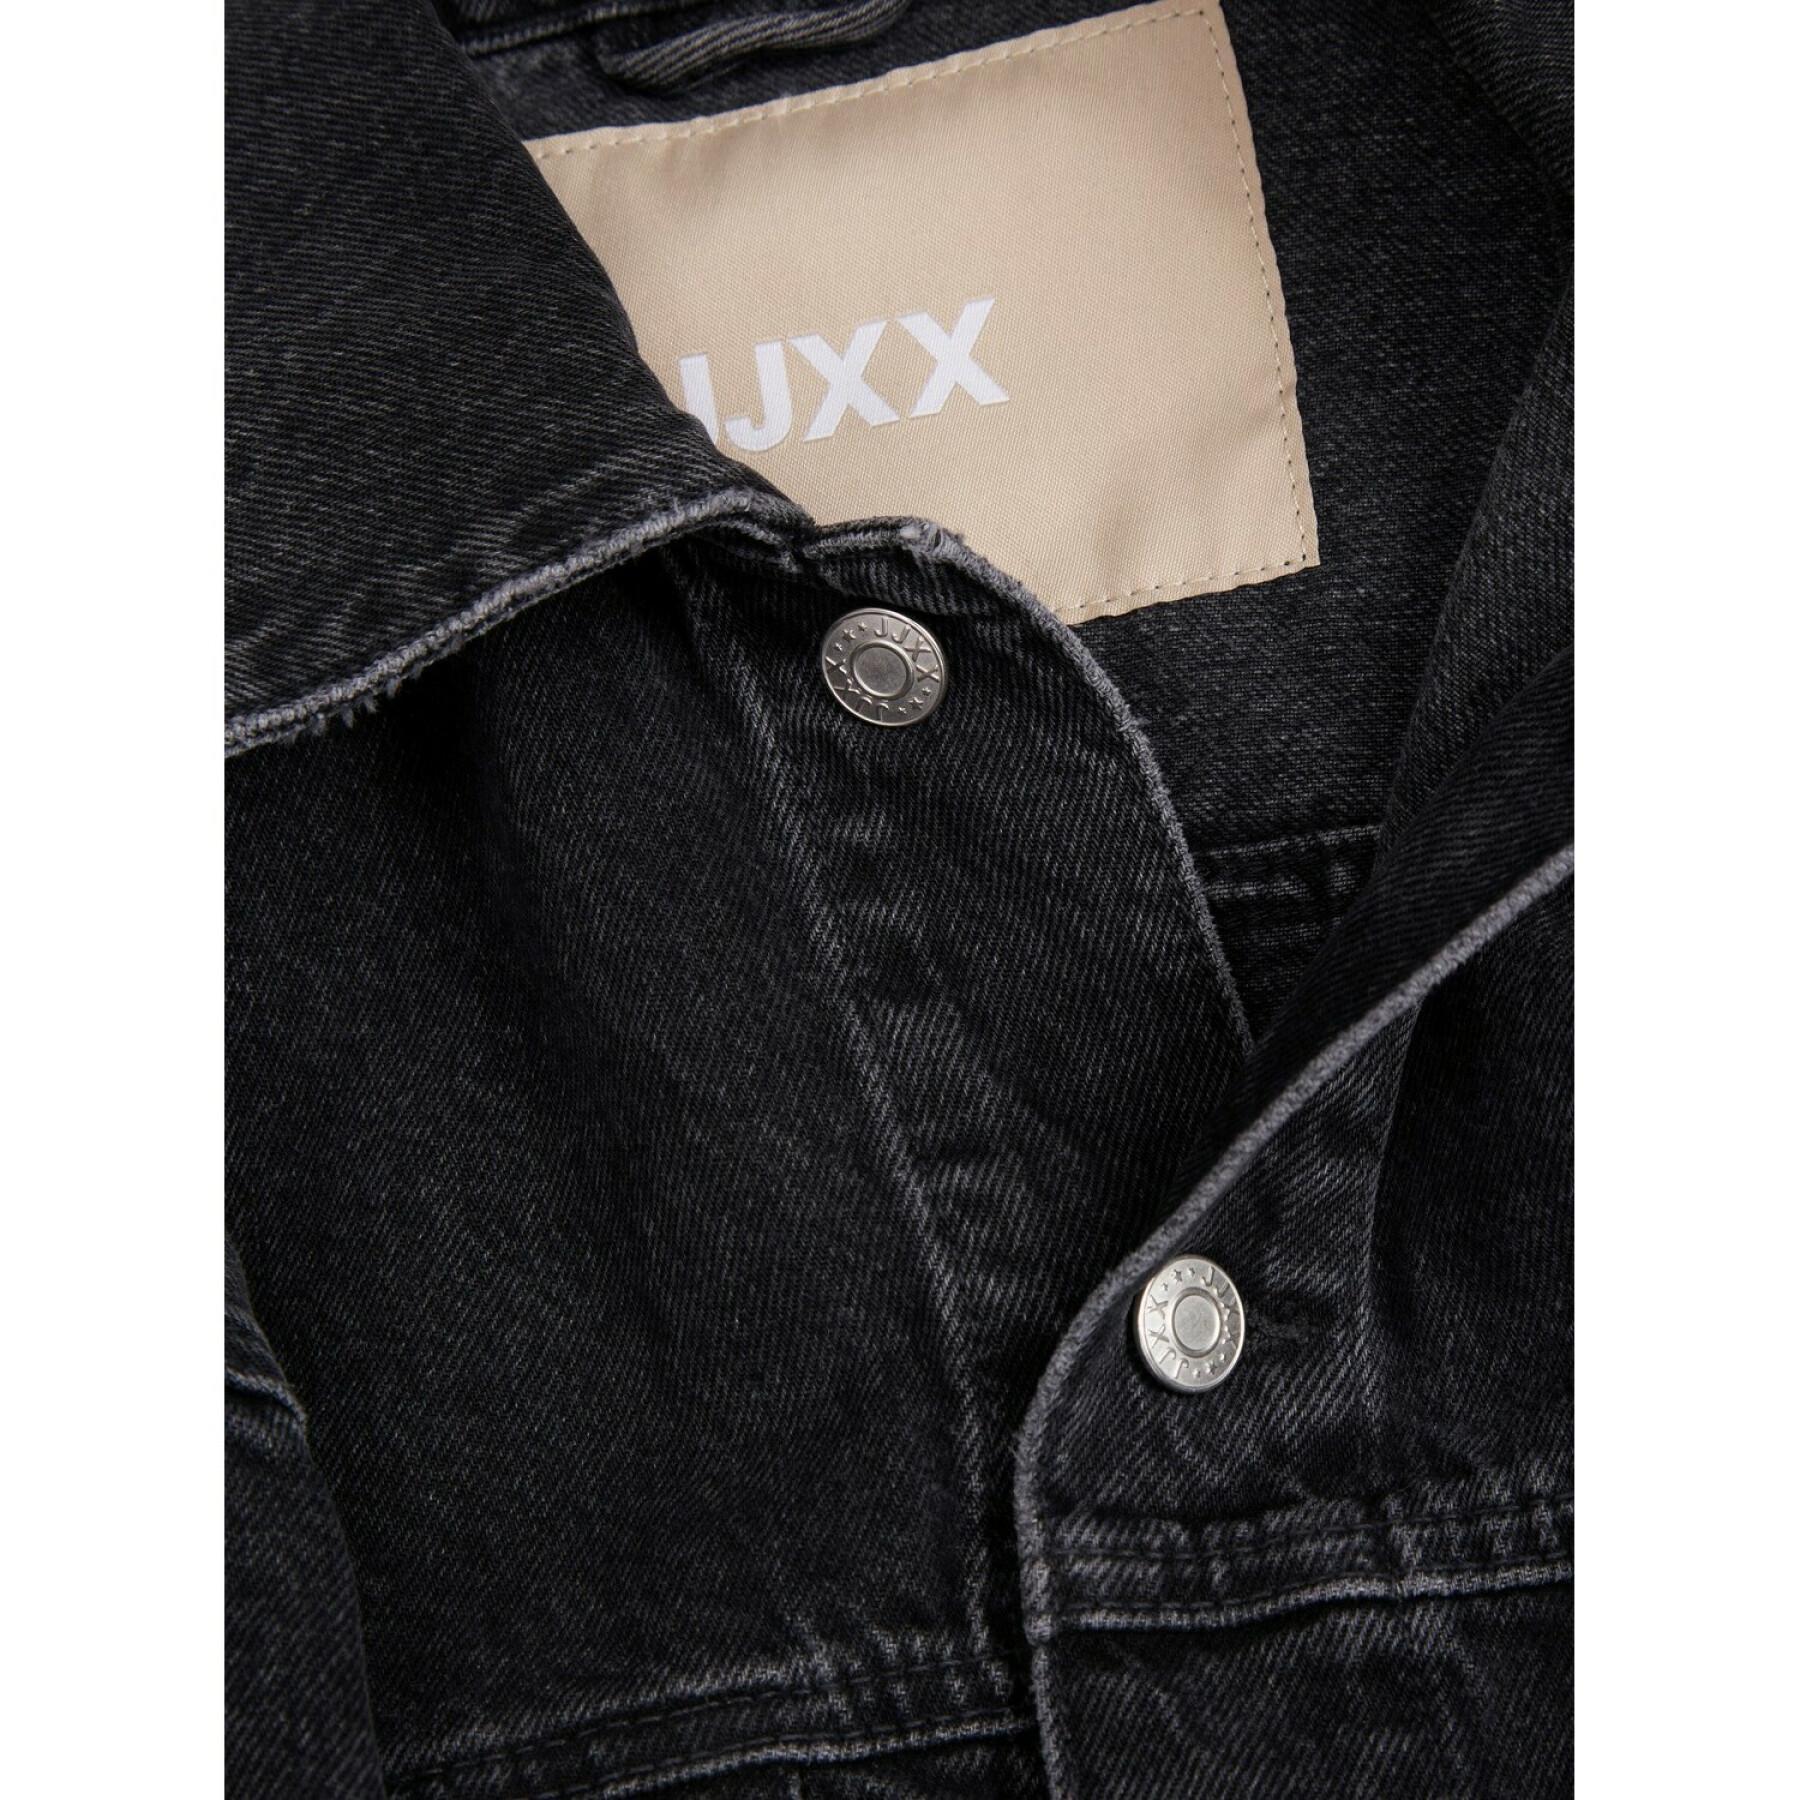 Giacca di jeans oversize da donna JJXX alison cr504